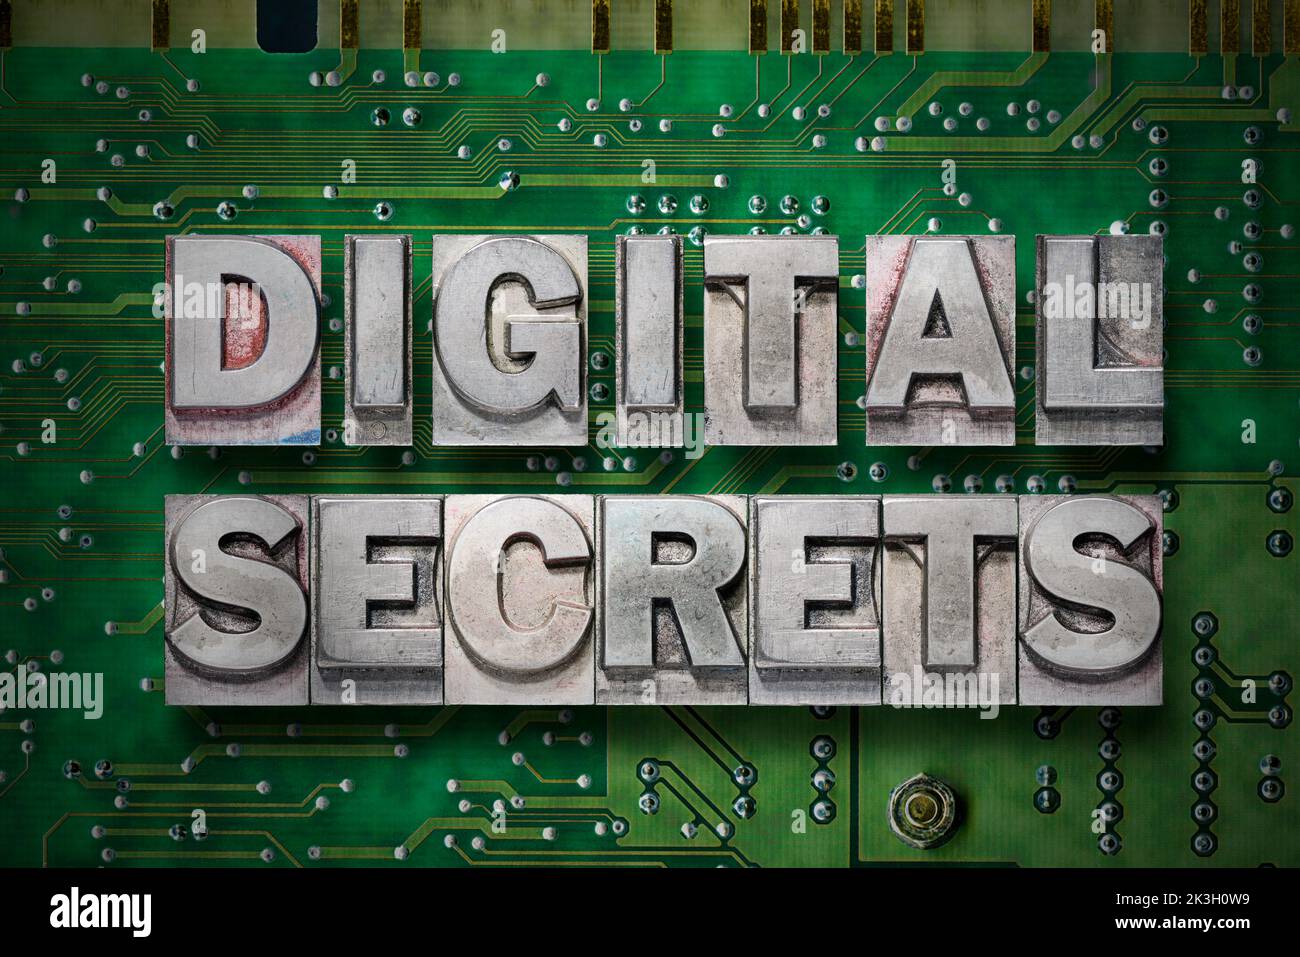 la frase de los secretos digitales hecha de los bloques metalizados de la tipografía en el fondo de la placa de pc Foto de stock